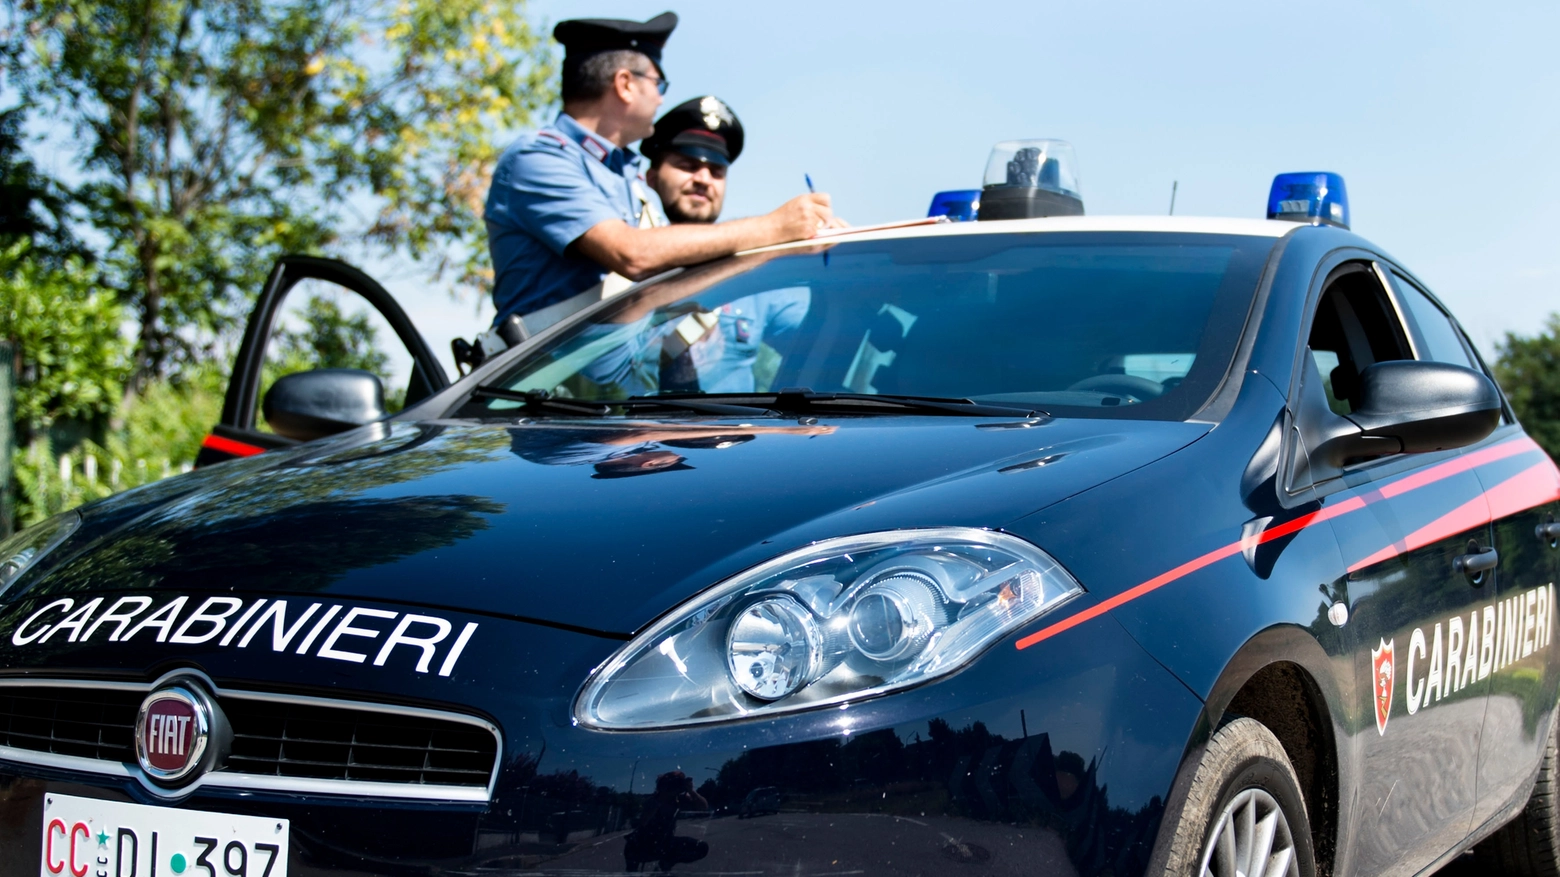 L'intervento dei Carabinieri (foto d'archivio Spf)